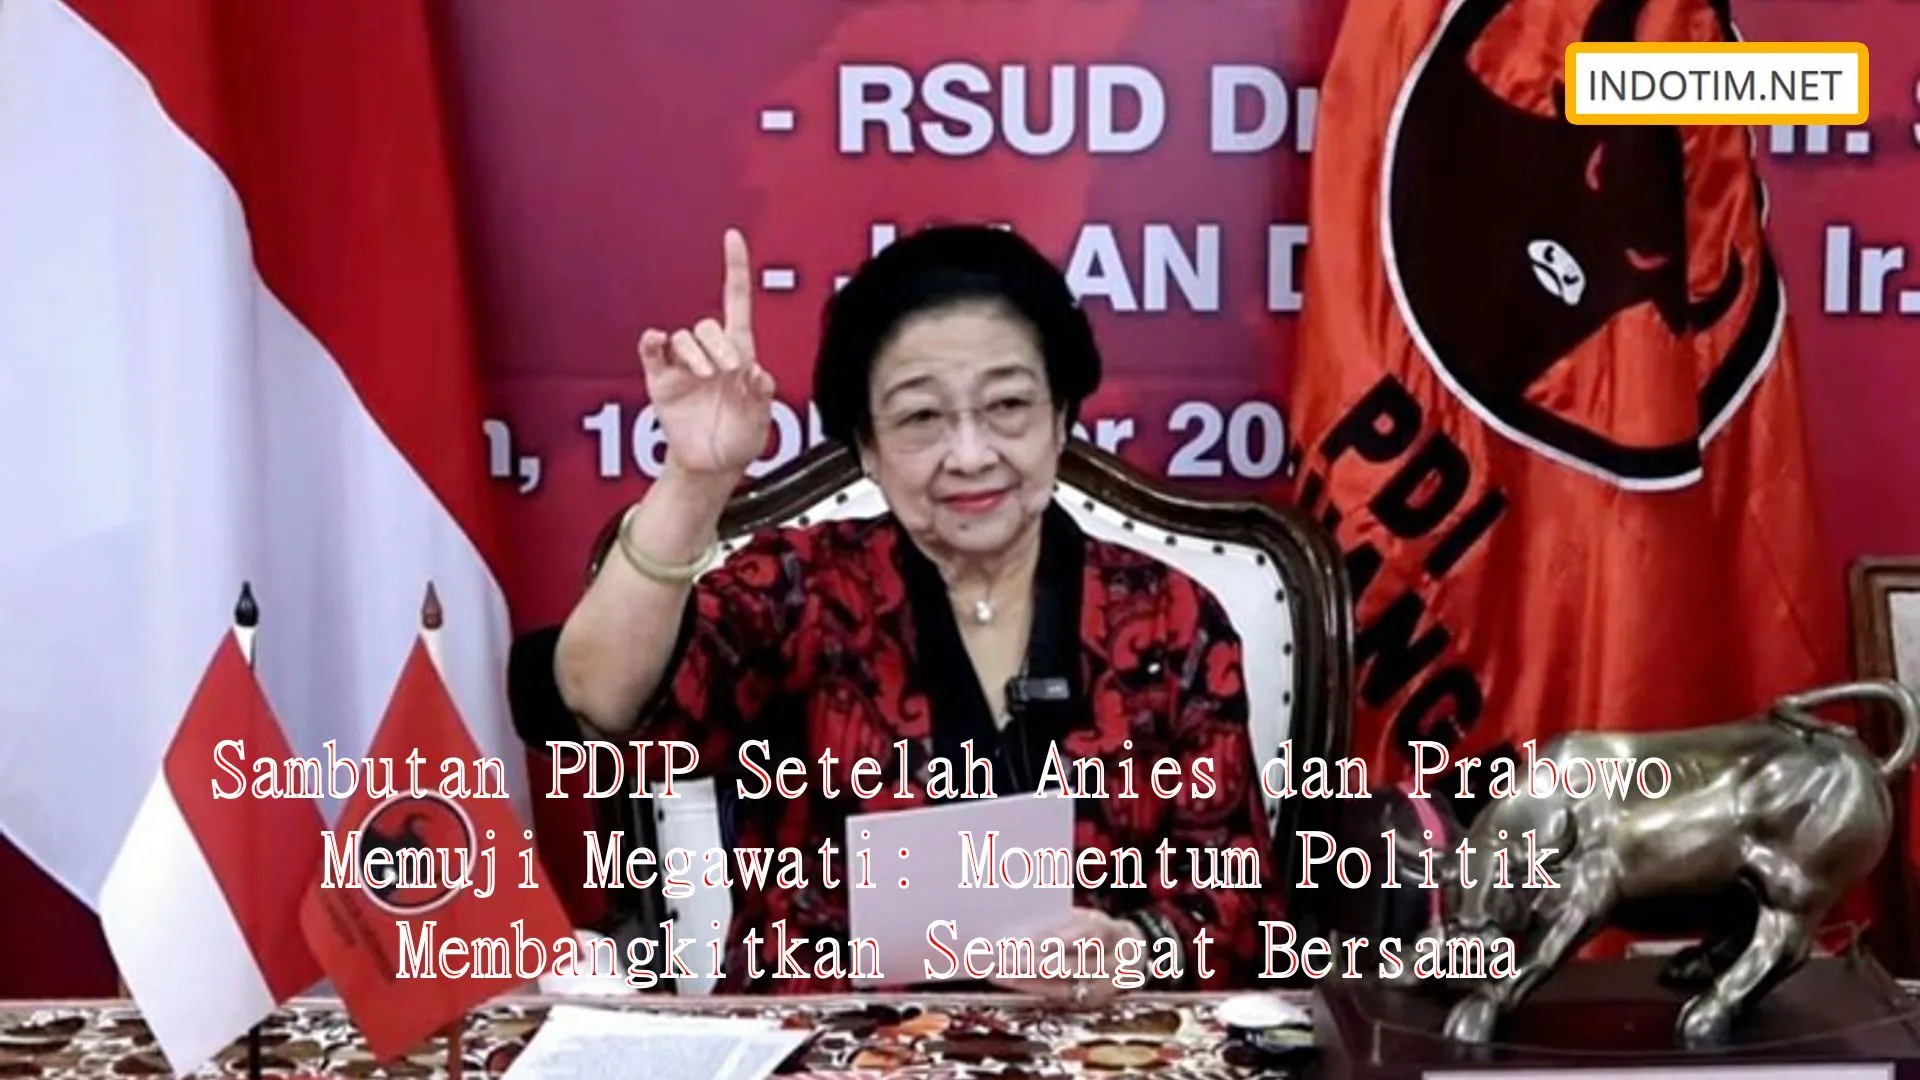 Sambutan PDIP Setelah Anies dan Prabowo Memuji Megawati: Momentum Politik Membangkitkan Semangat Bersama